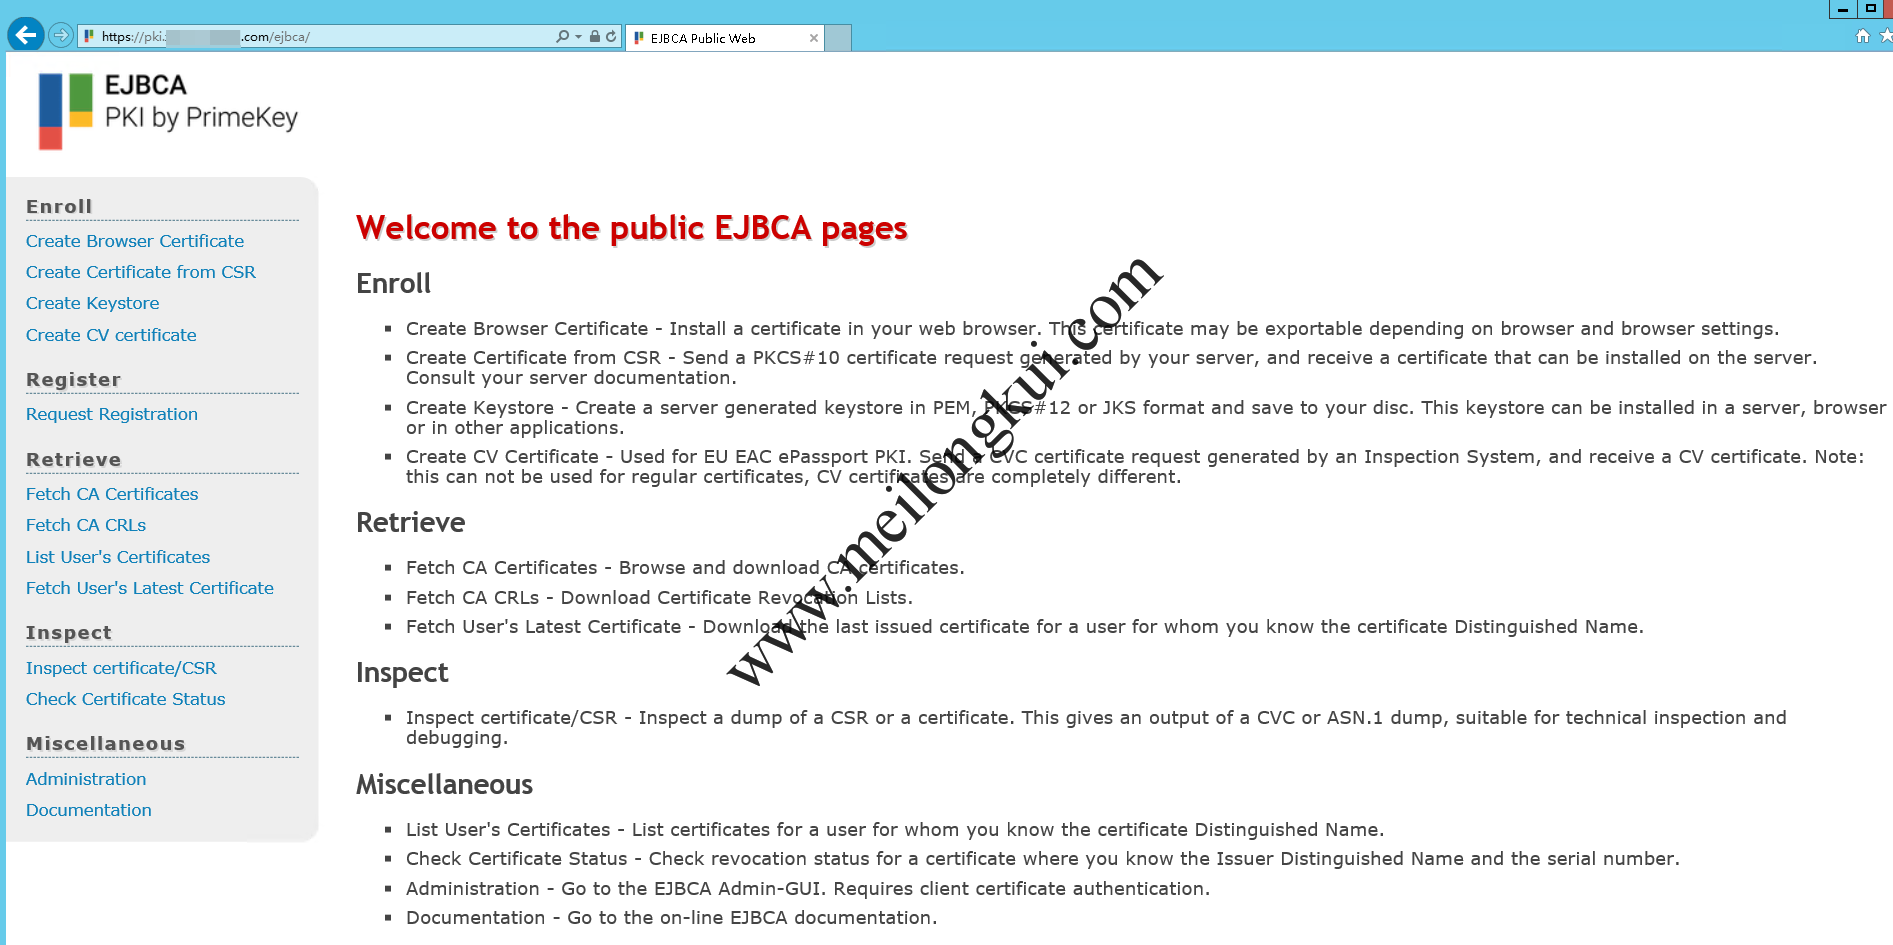 EJBCA Public Web